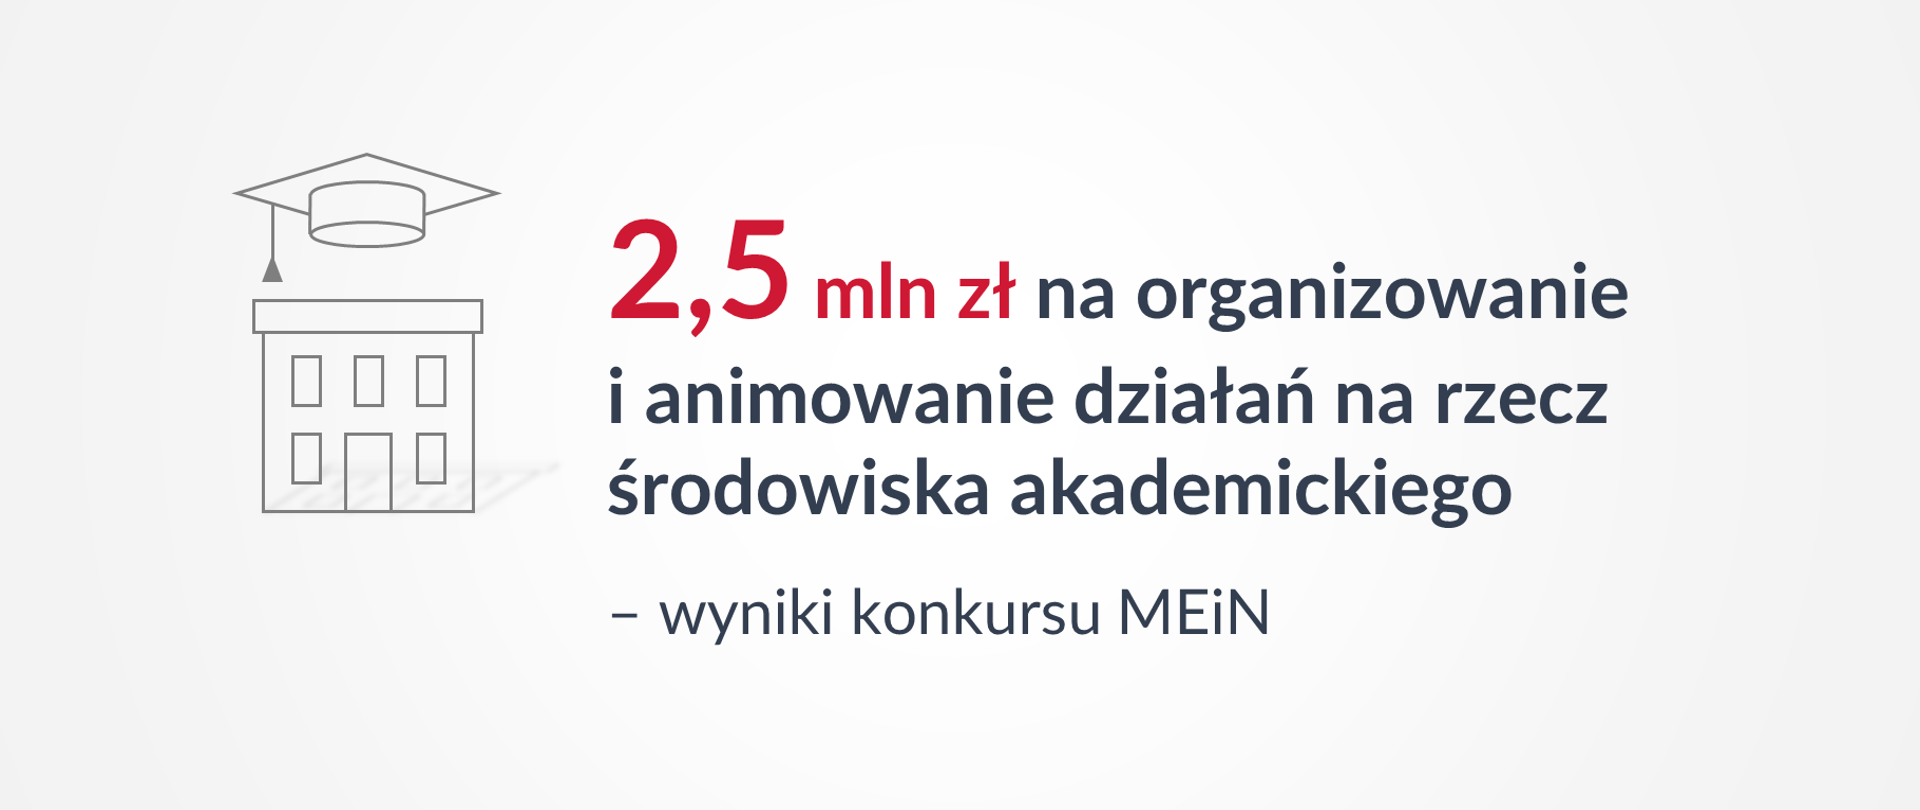 Grafika z tekstem: "2,5 mln zł na organizowanie i animowanie działań na rzecz środowiska akademickiego – wyniki konkursu MEiN"